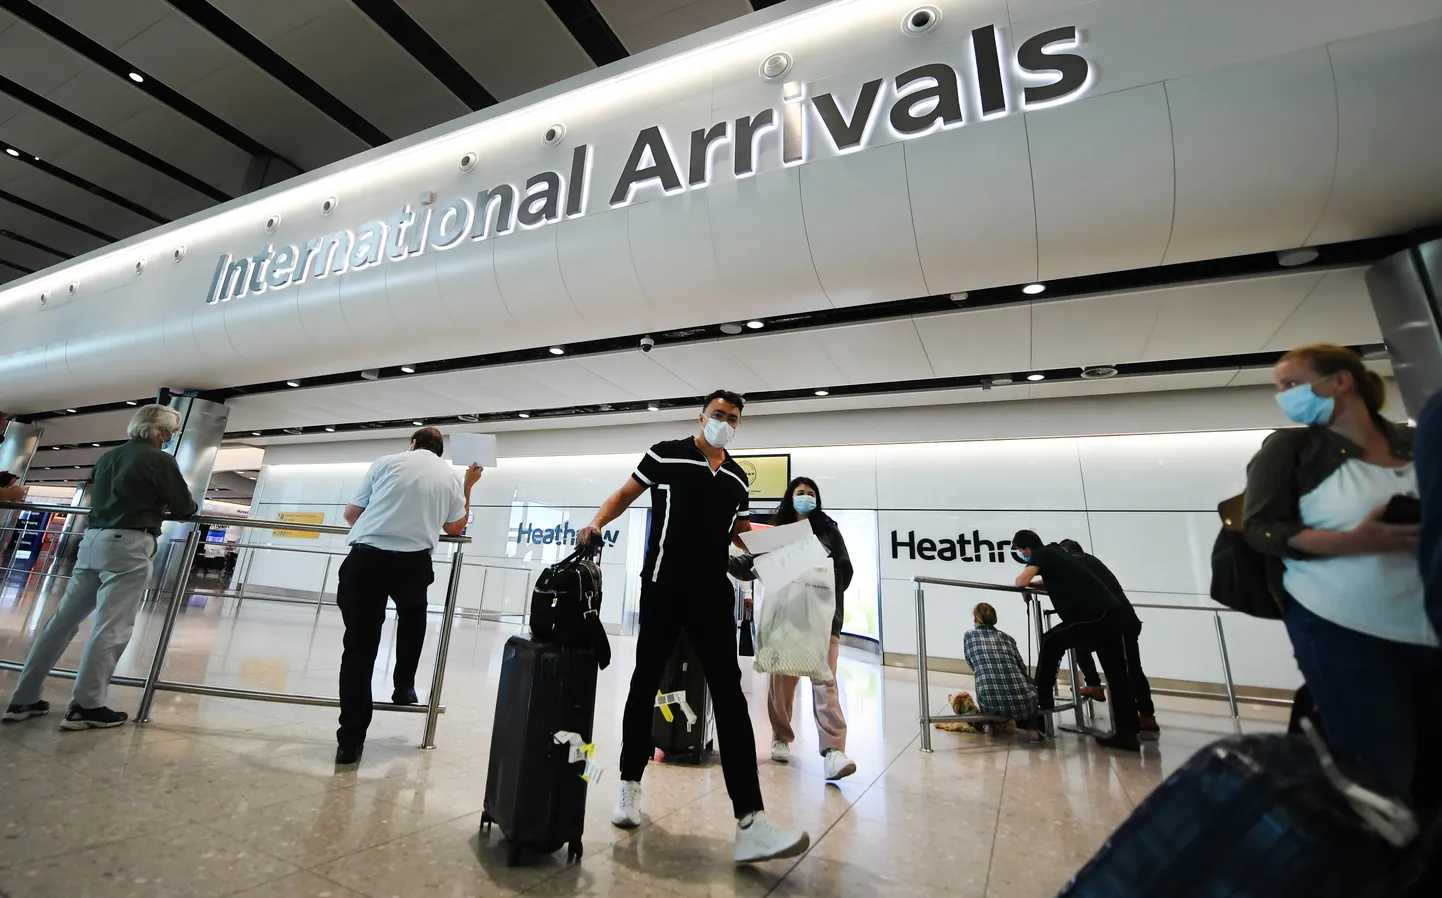 Reisijad saabumas juuli lõpus Heathrow lennujaama Londonis pärast piirangute taaskehtestamist mitmete turismipiirkondadega, teiste hulgas Hispaaniaga.